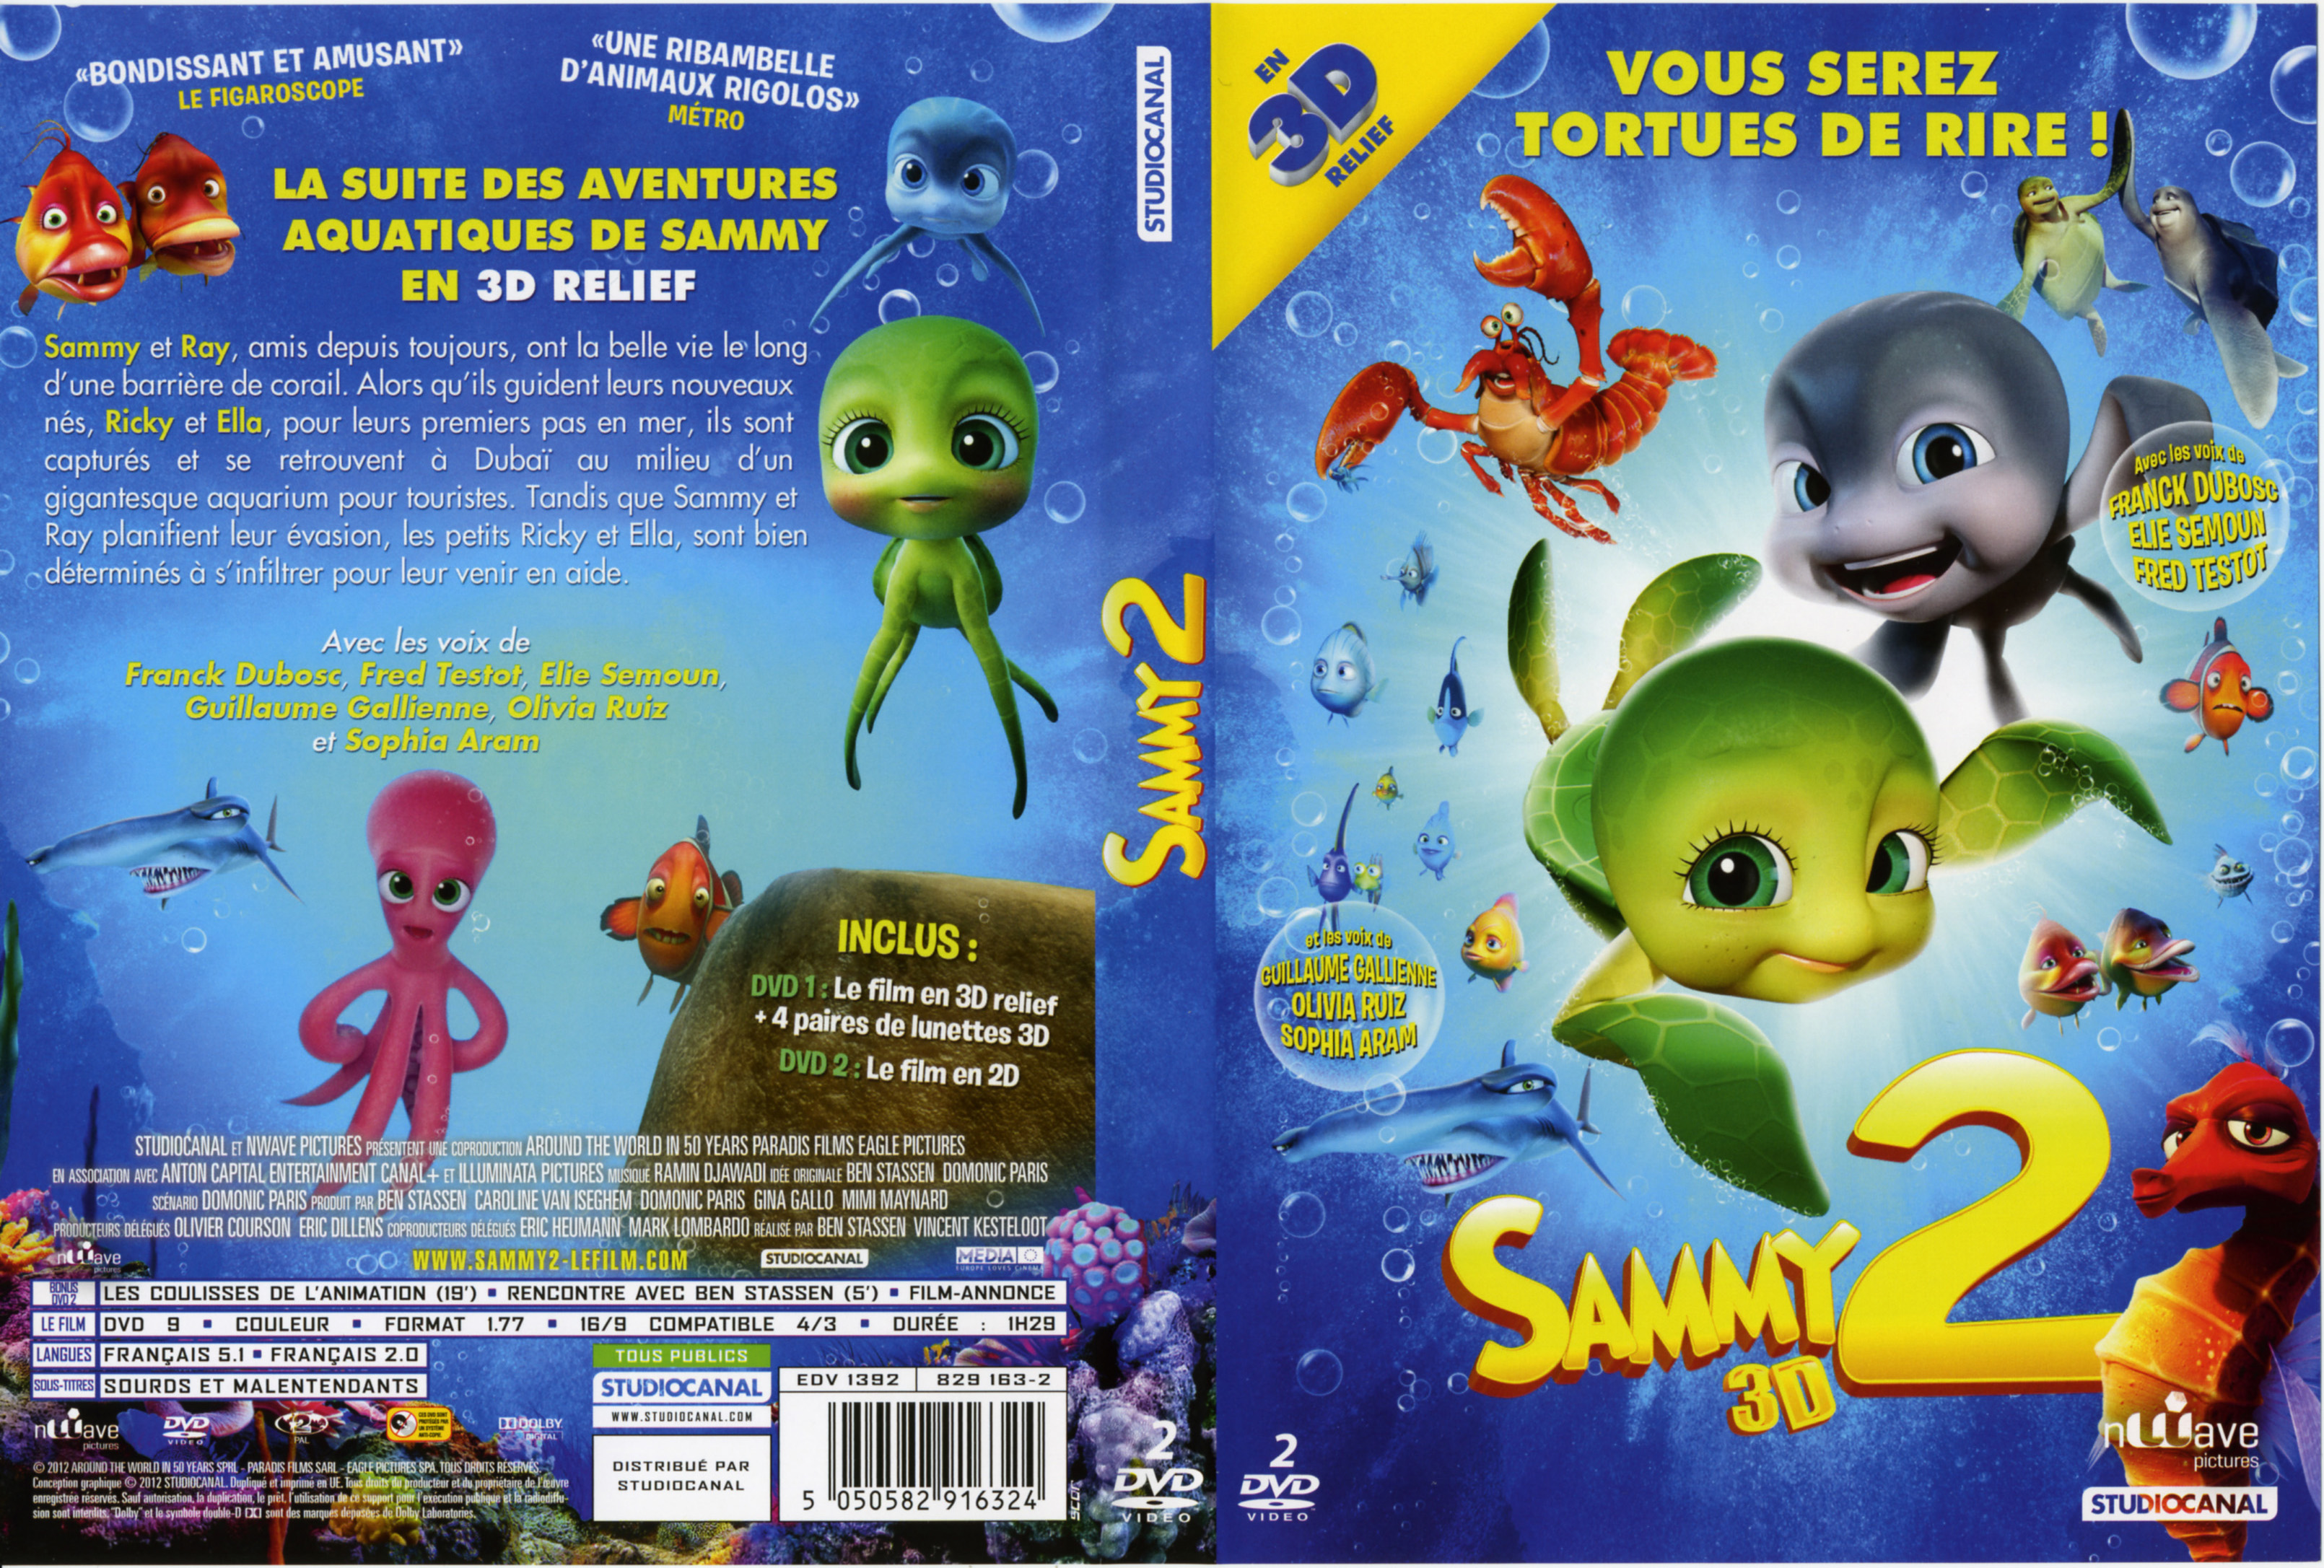 Jaquette DVD Sammy 2 v2